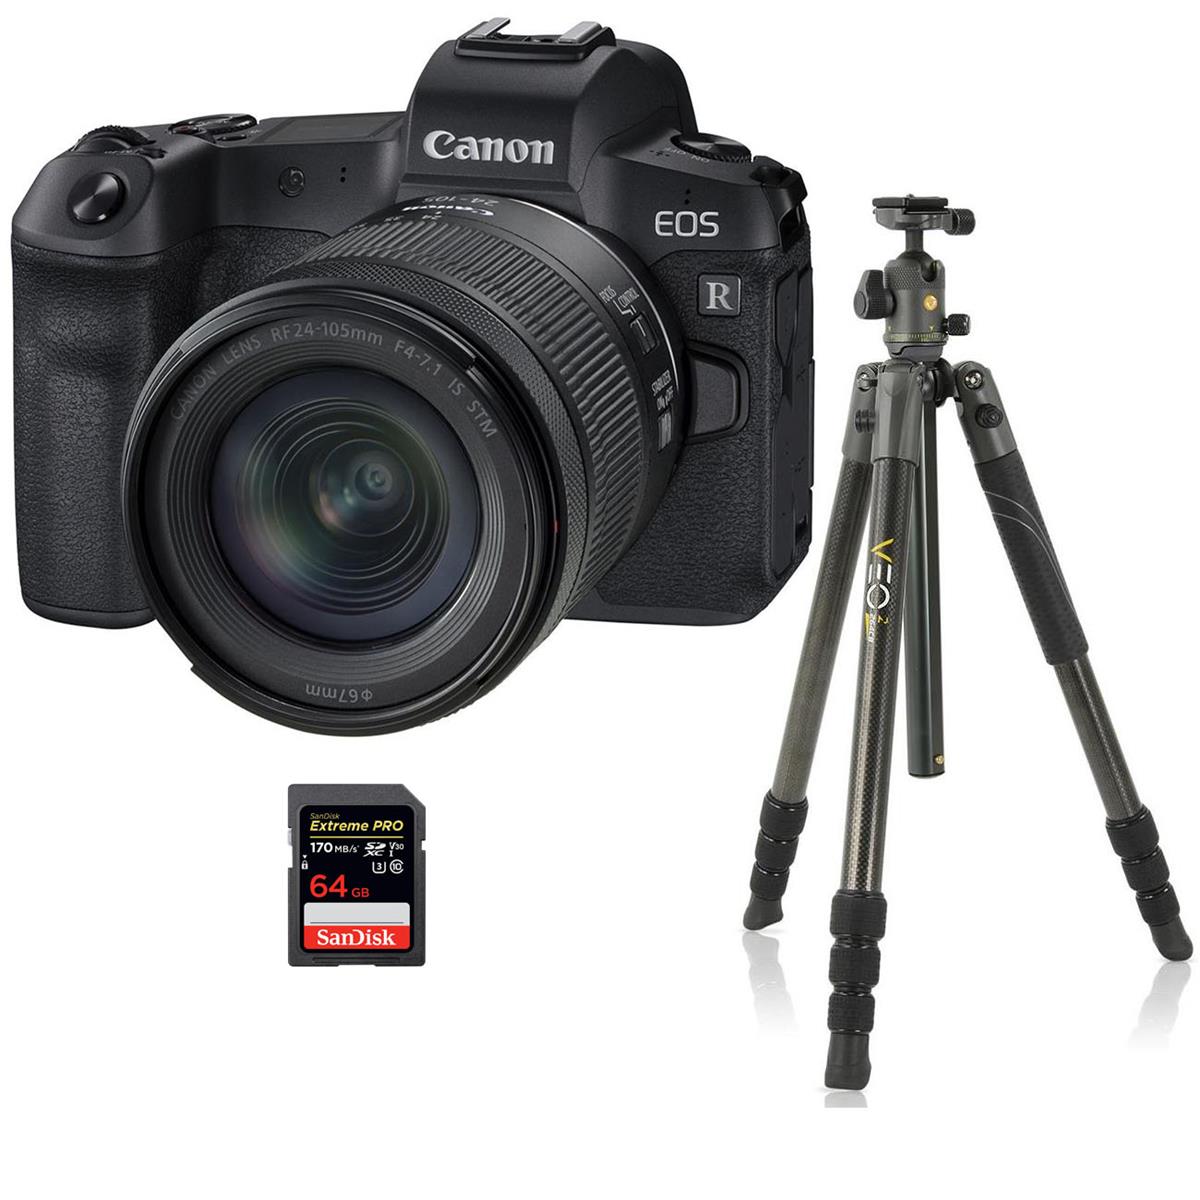 Canon EOS R Digital Camera w/RF 24-105mm f/4 L IS Lens, Bundle w/VEO 2 Al Tripod